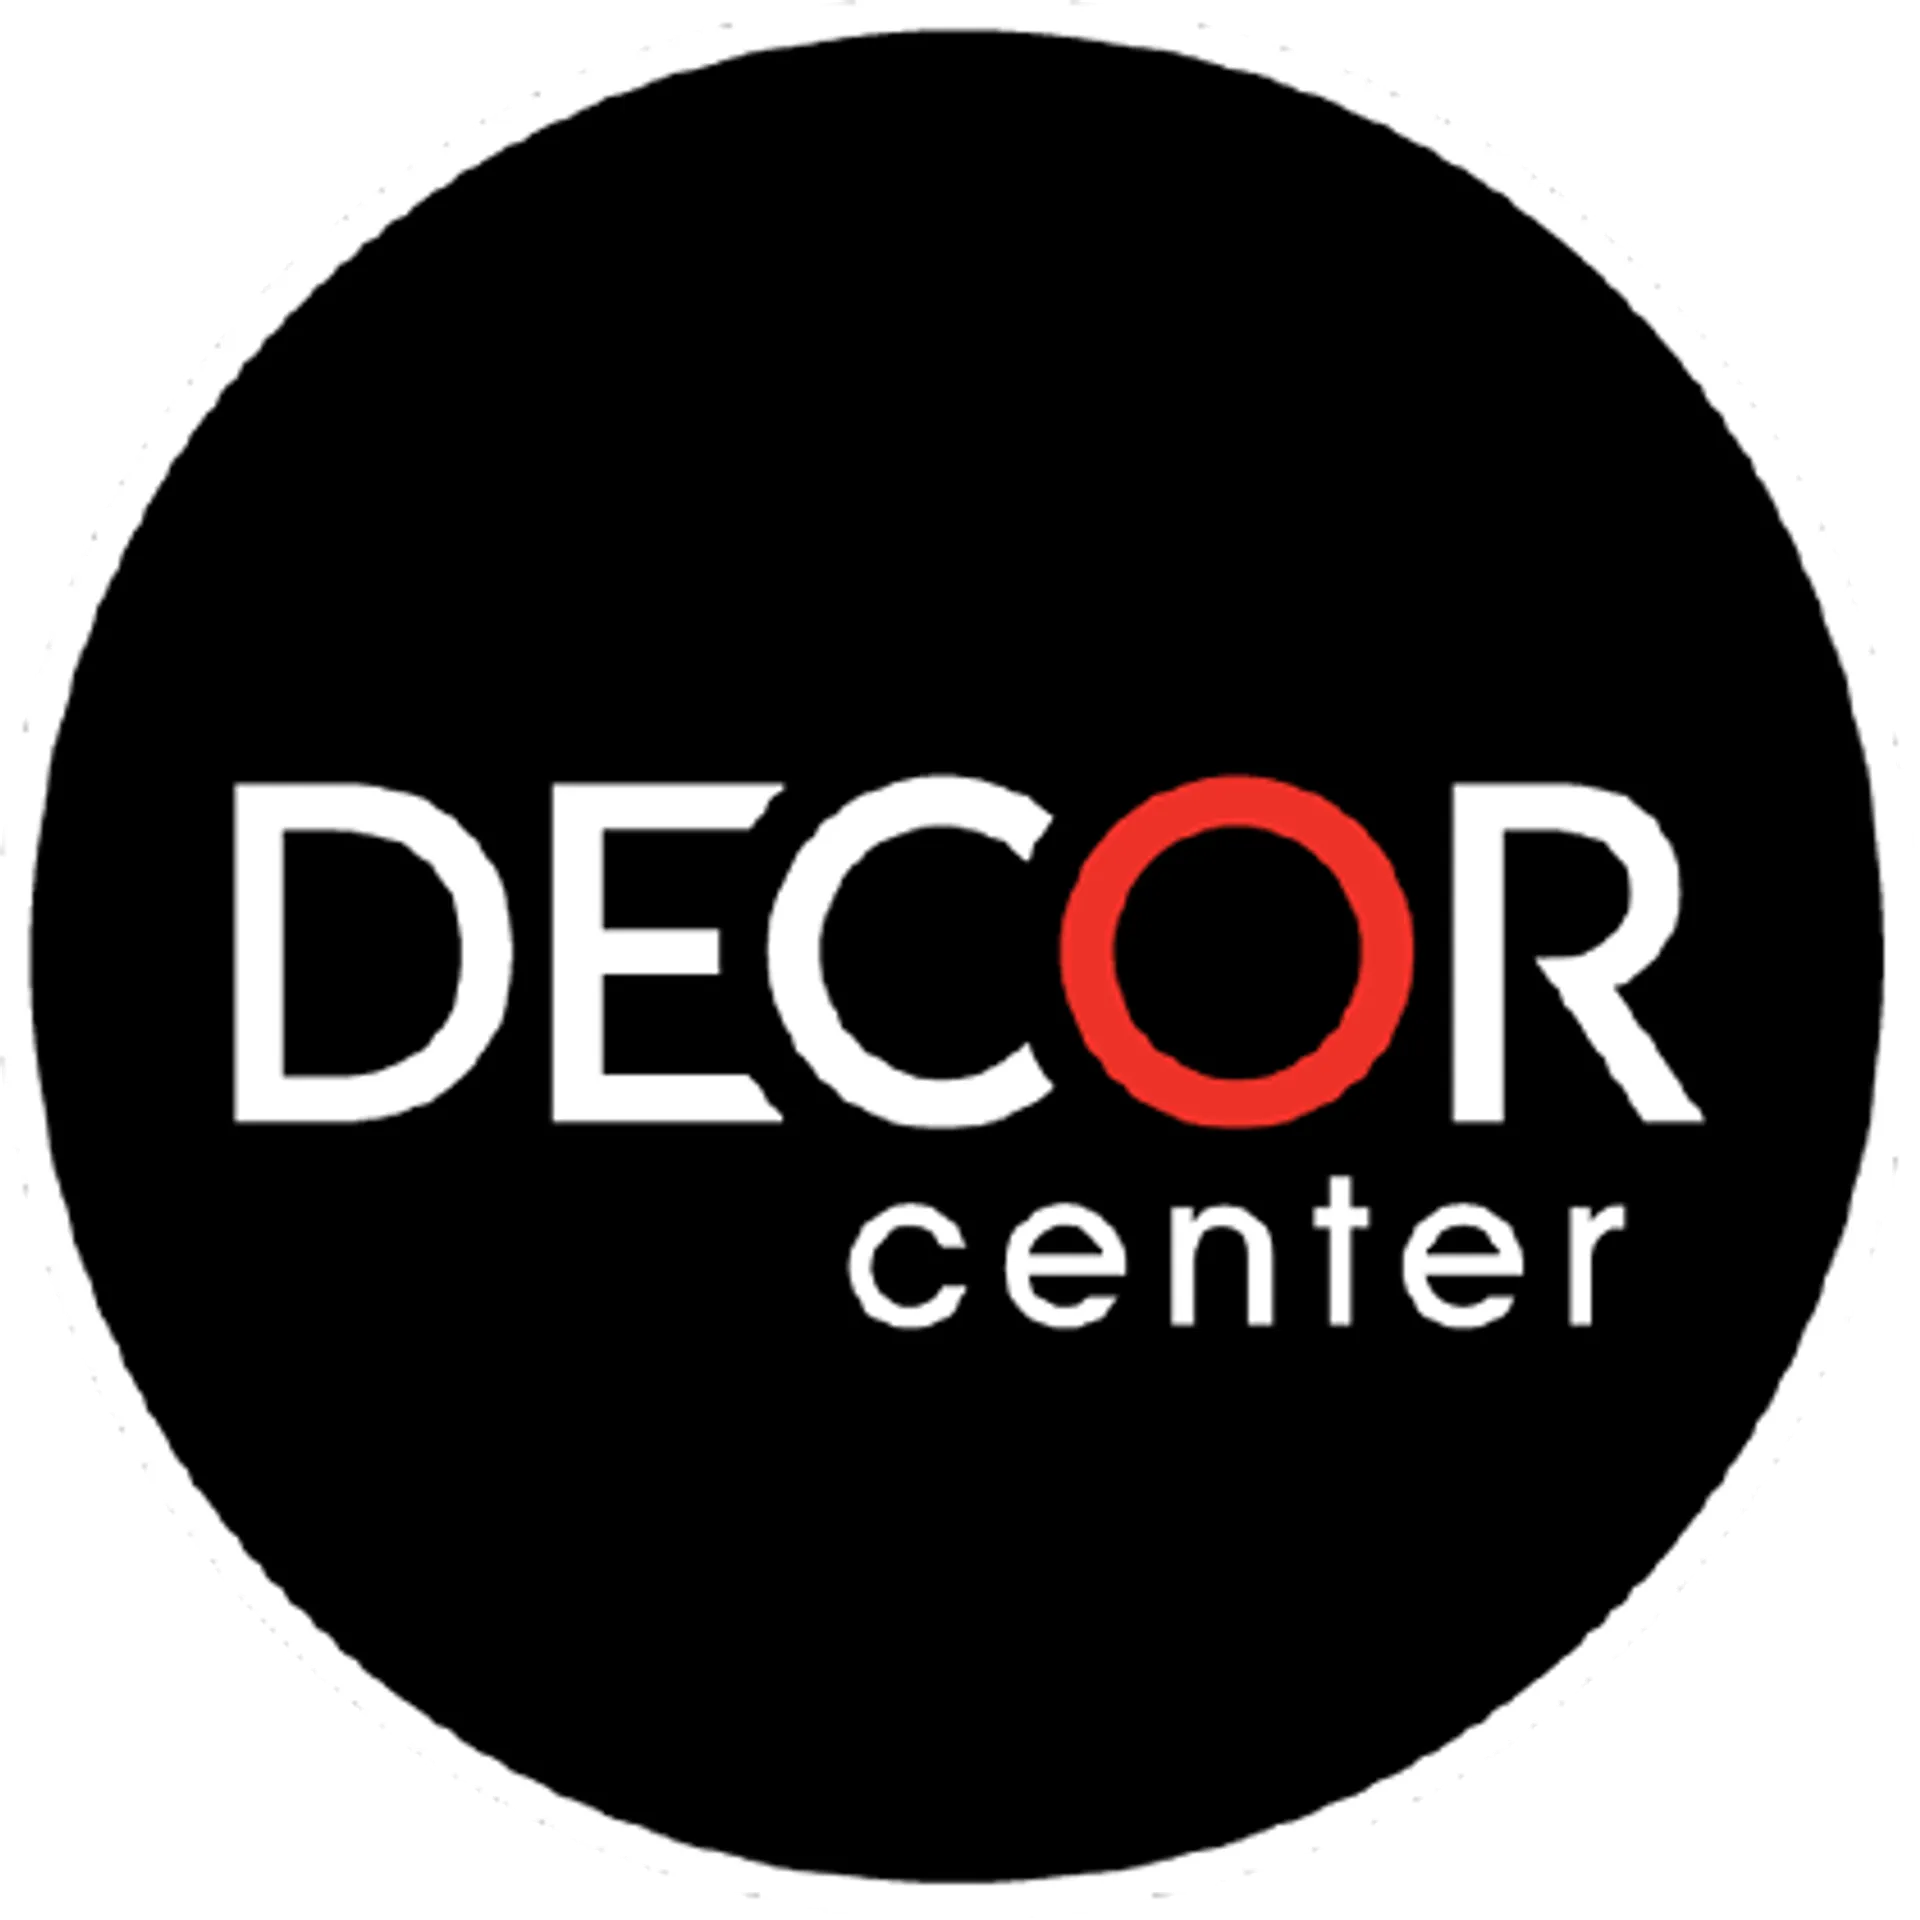 DECOR CENTER logo de catálogo